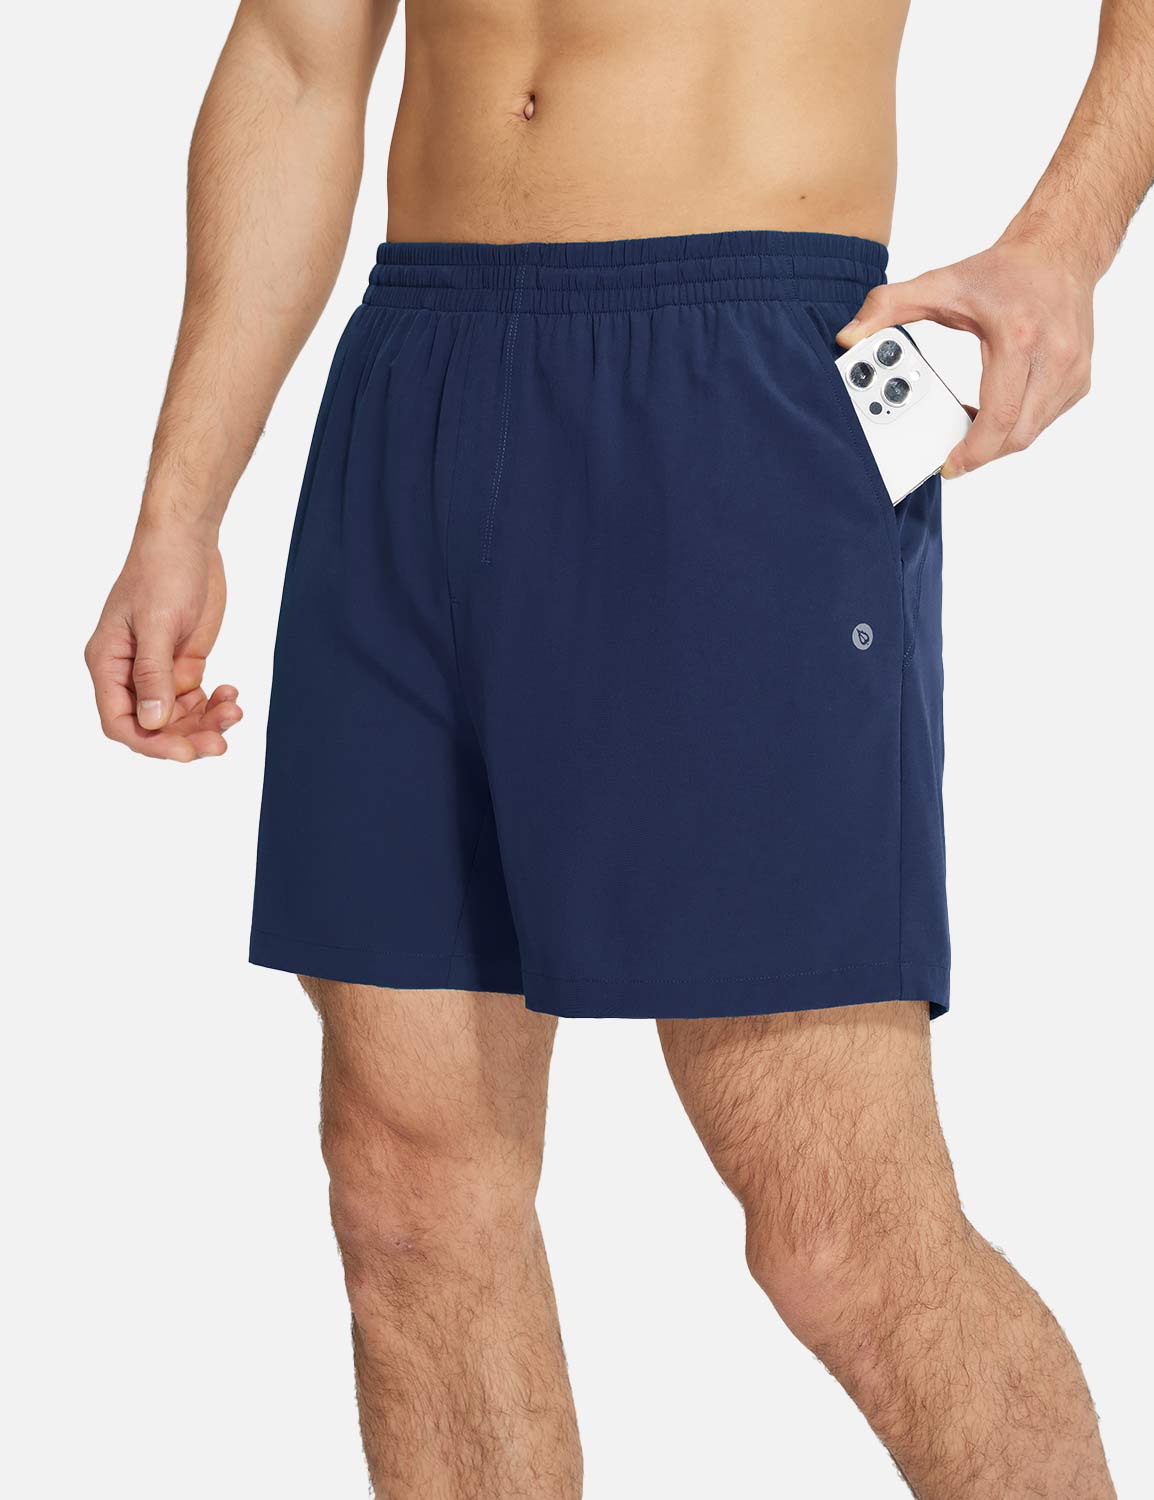 Baleaf Men's Lightweight Quick-dry Shorts Dark Sapphire with Pockets